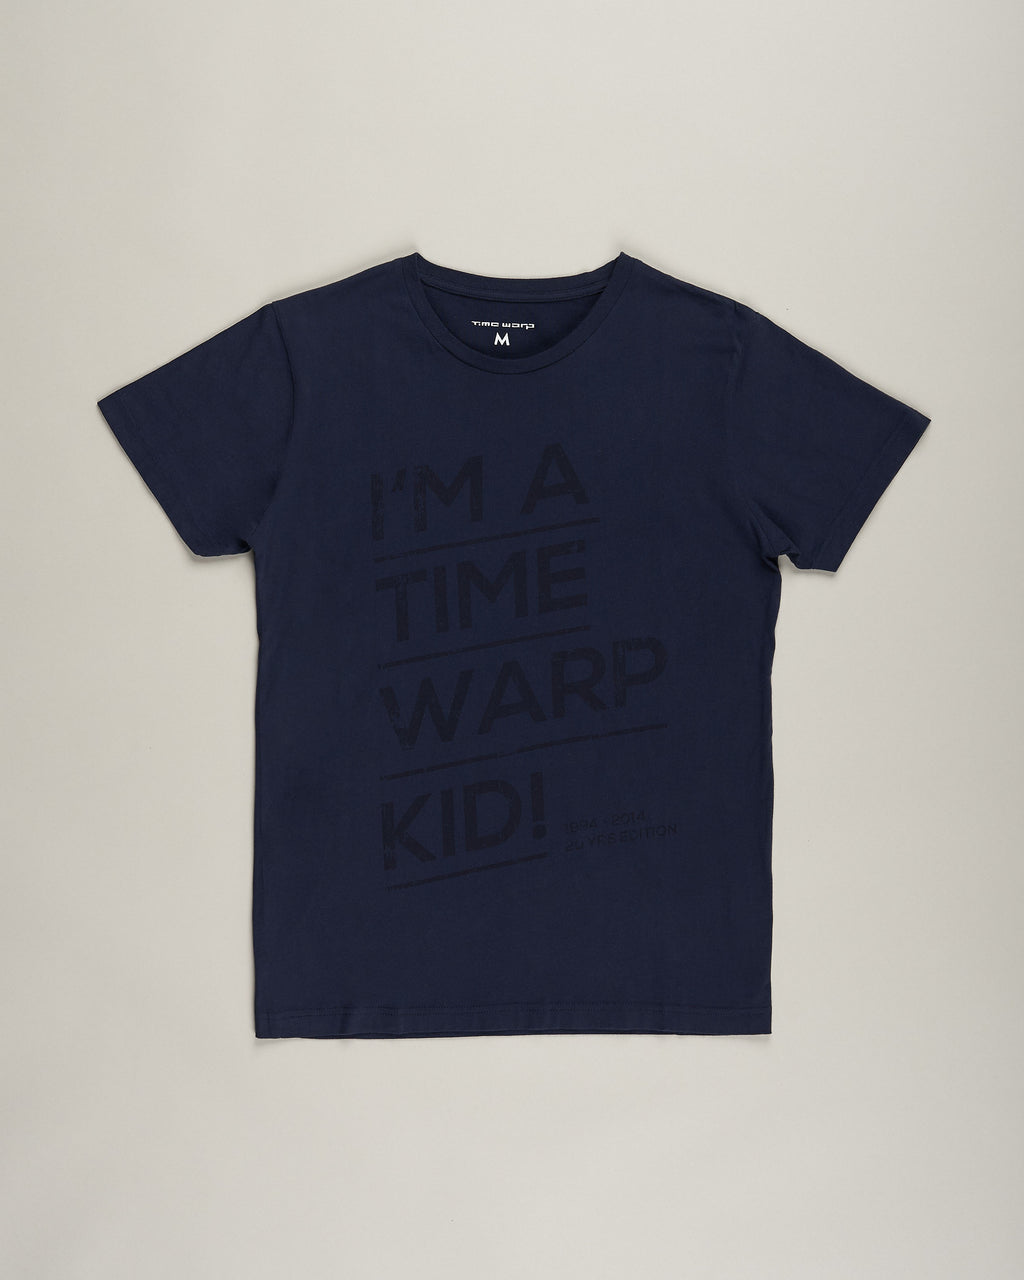 I Am A Time Warp Kid T-Shirt